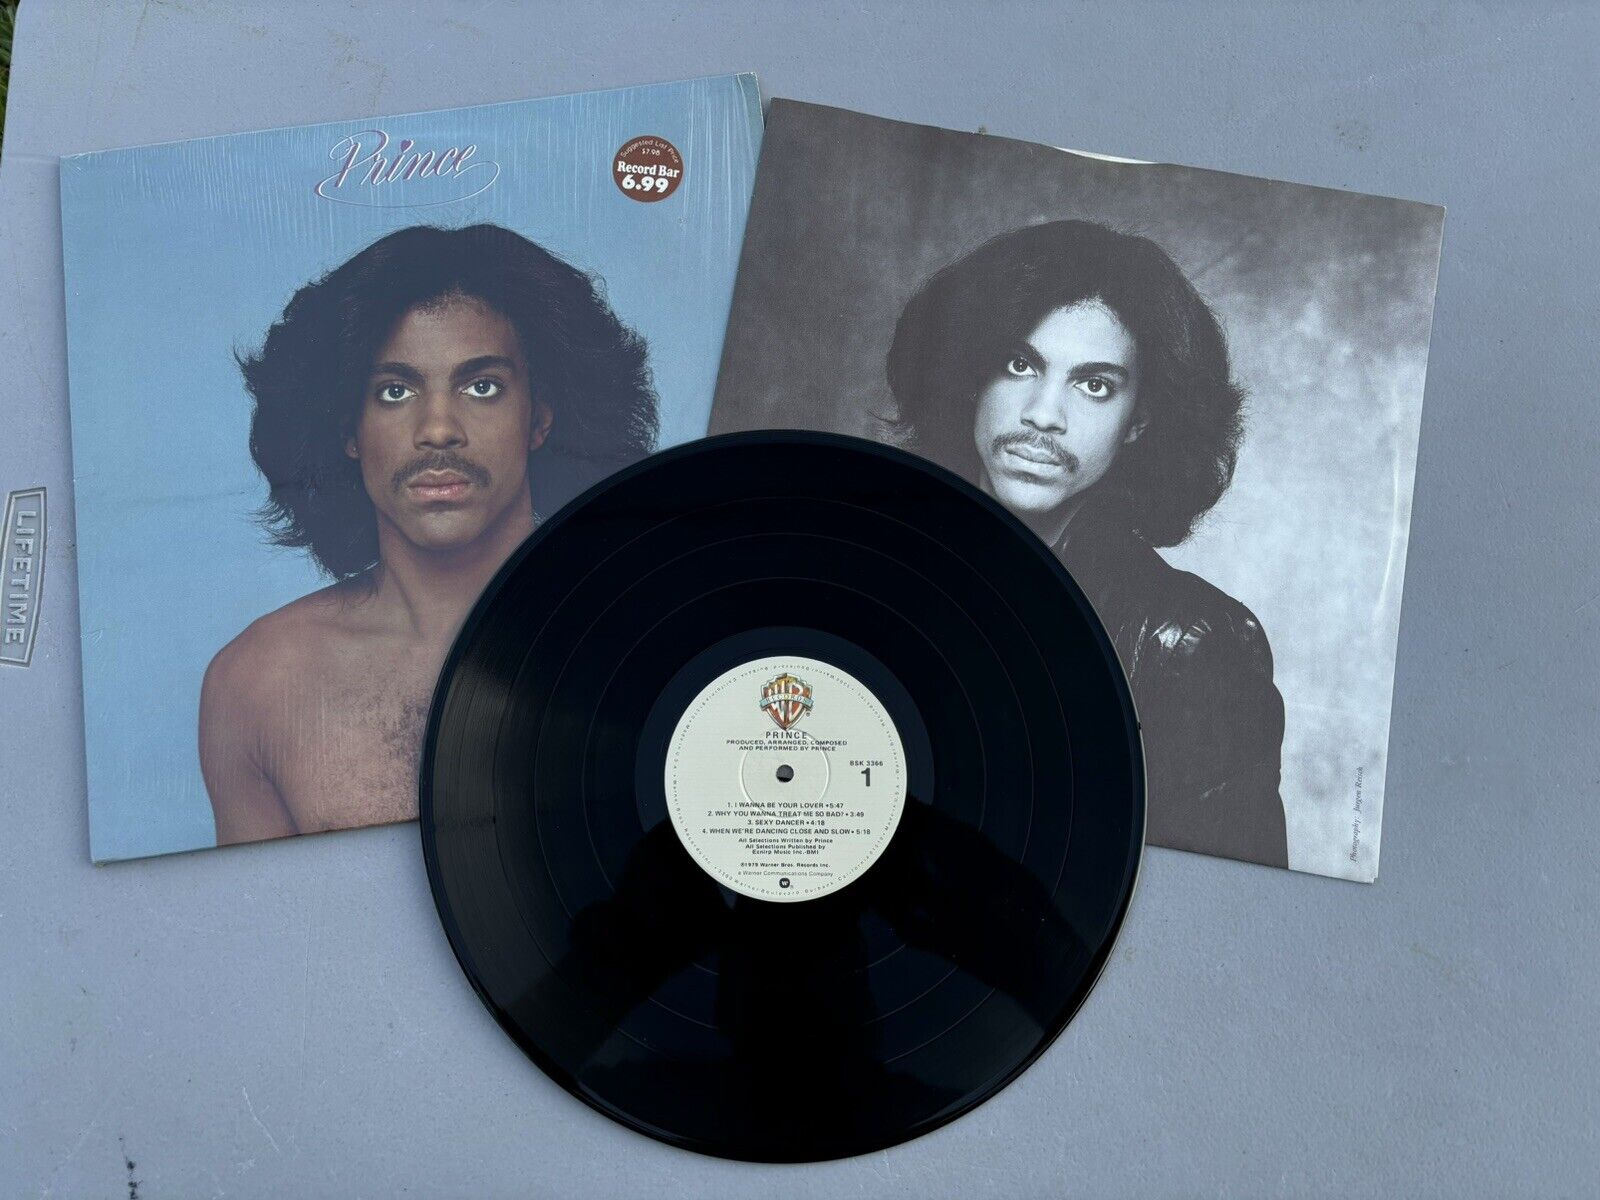 Vintage 1979, Prince *Self Titled* Warner Bros, BSK-3366, LP Record, Sleeve